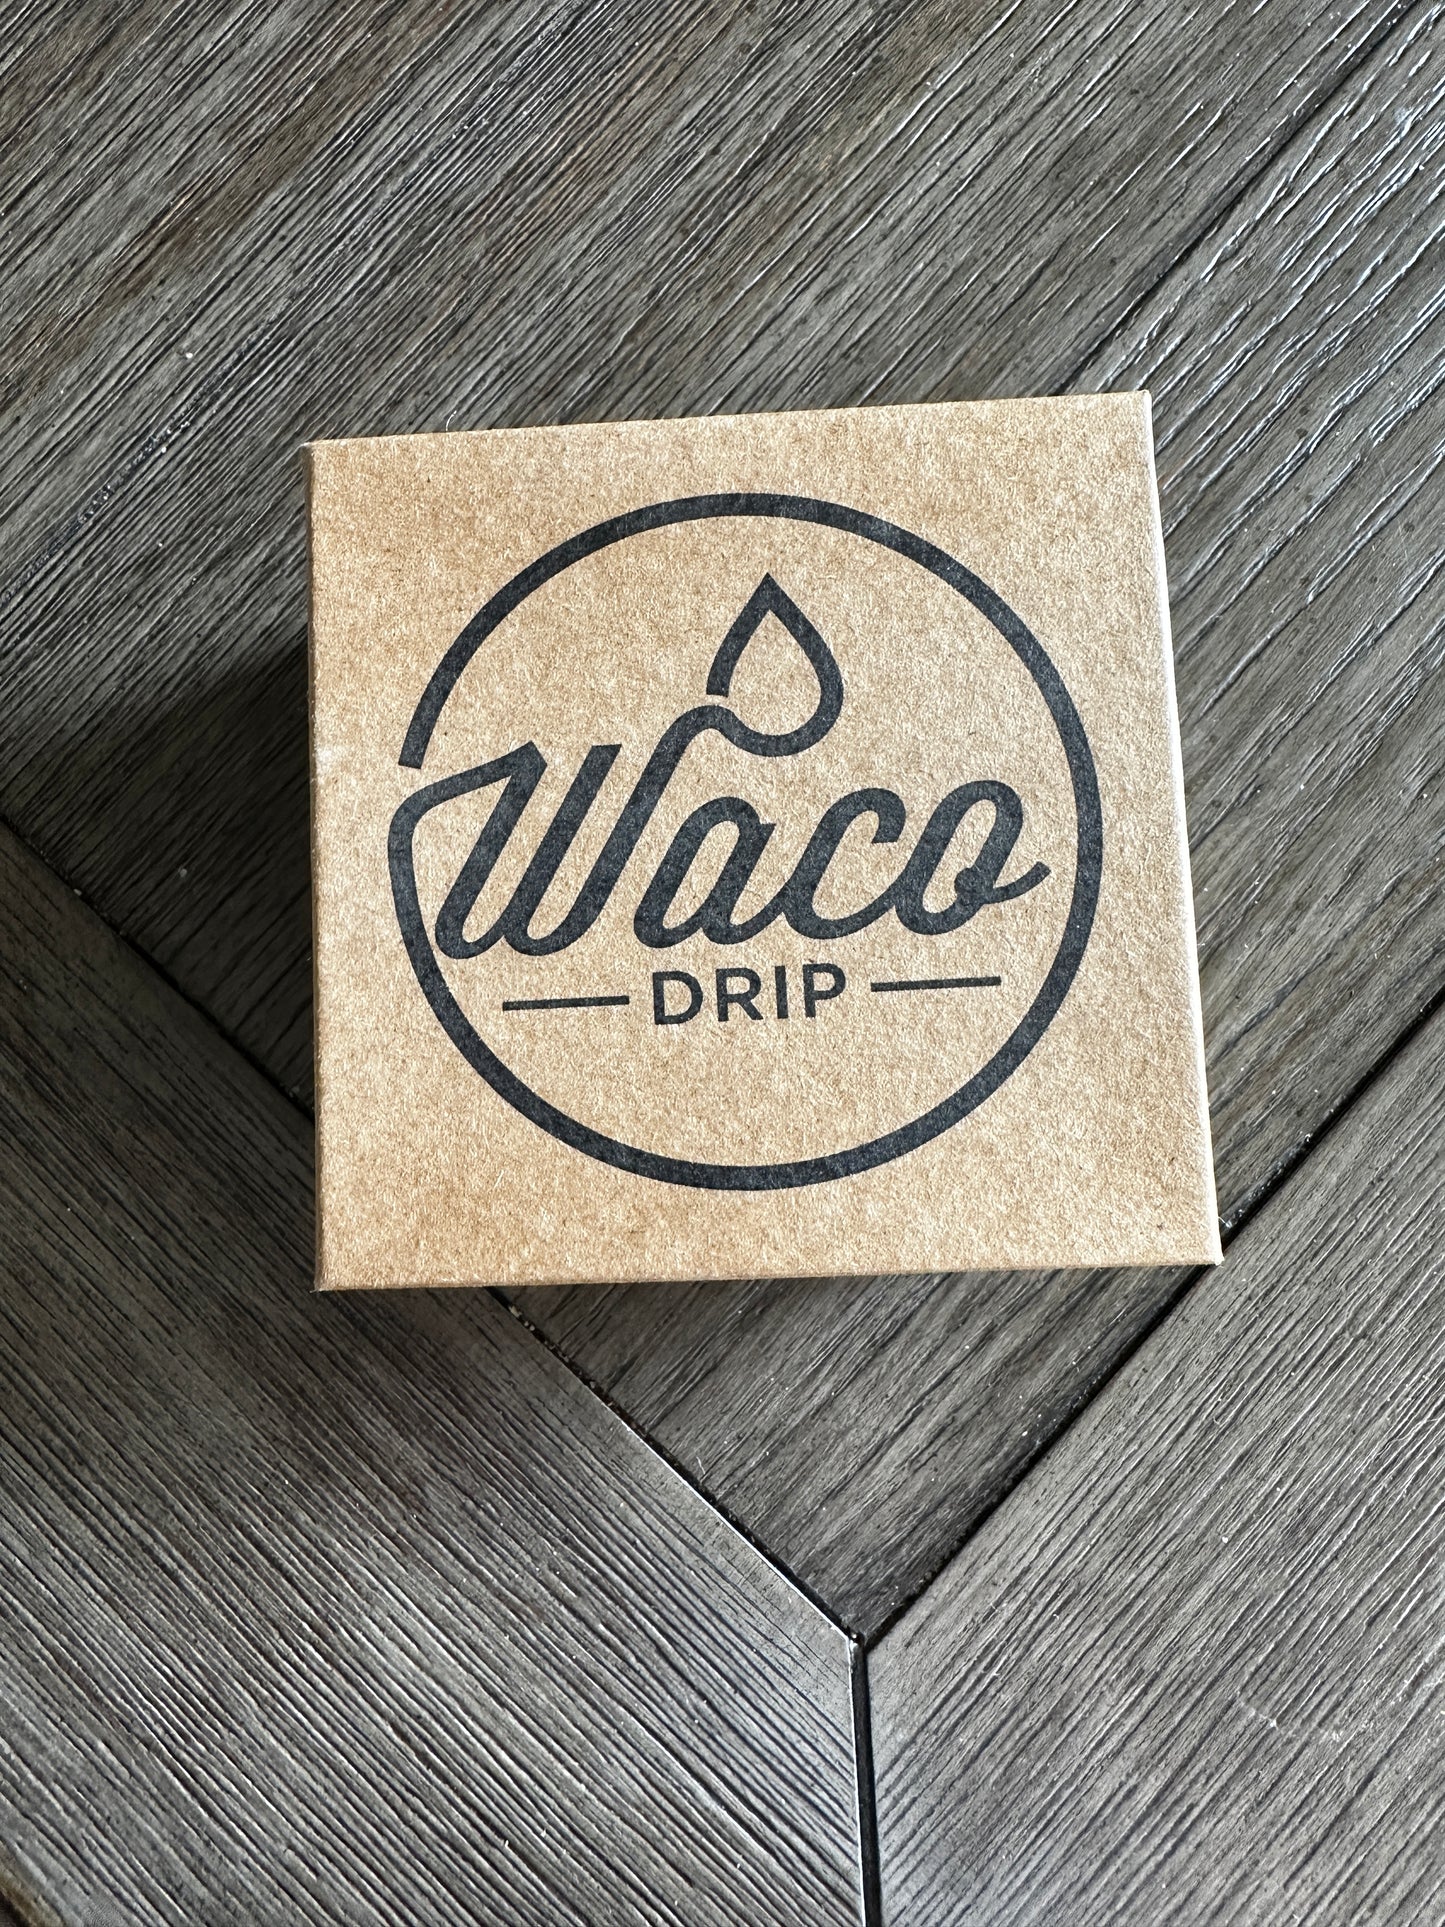 waco drip box